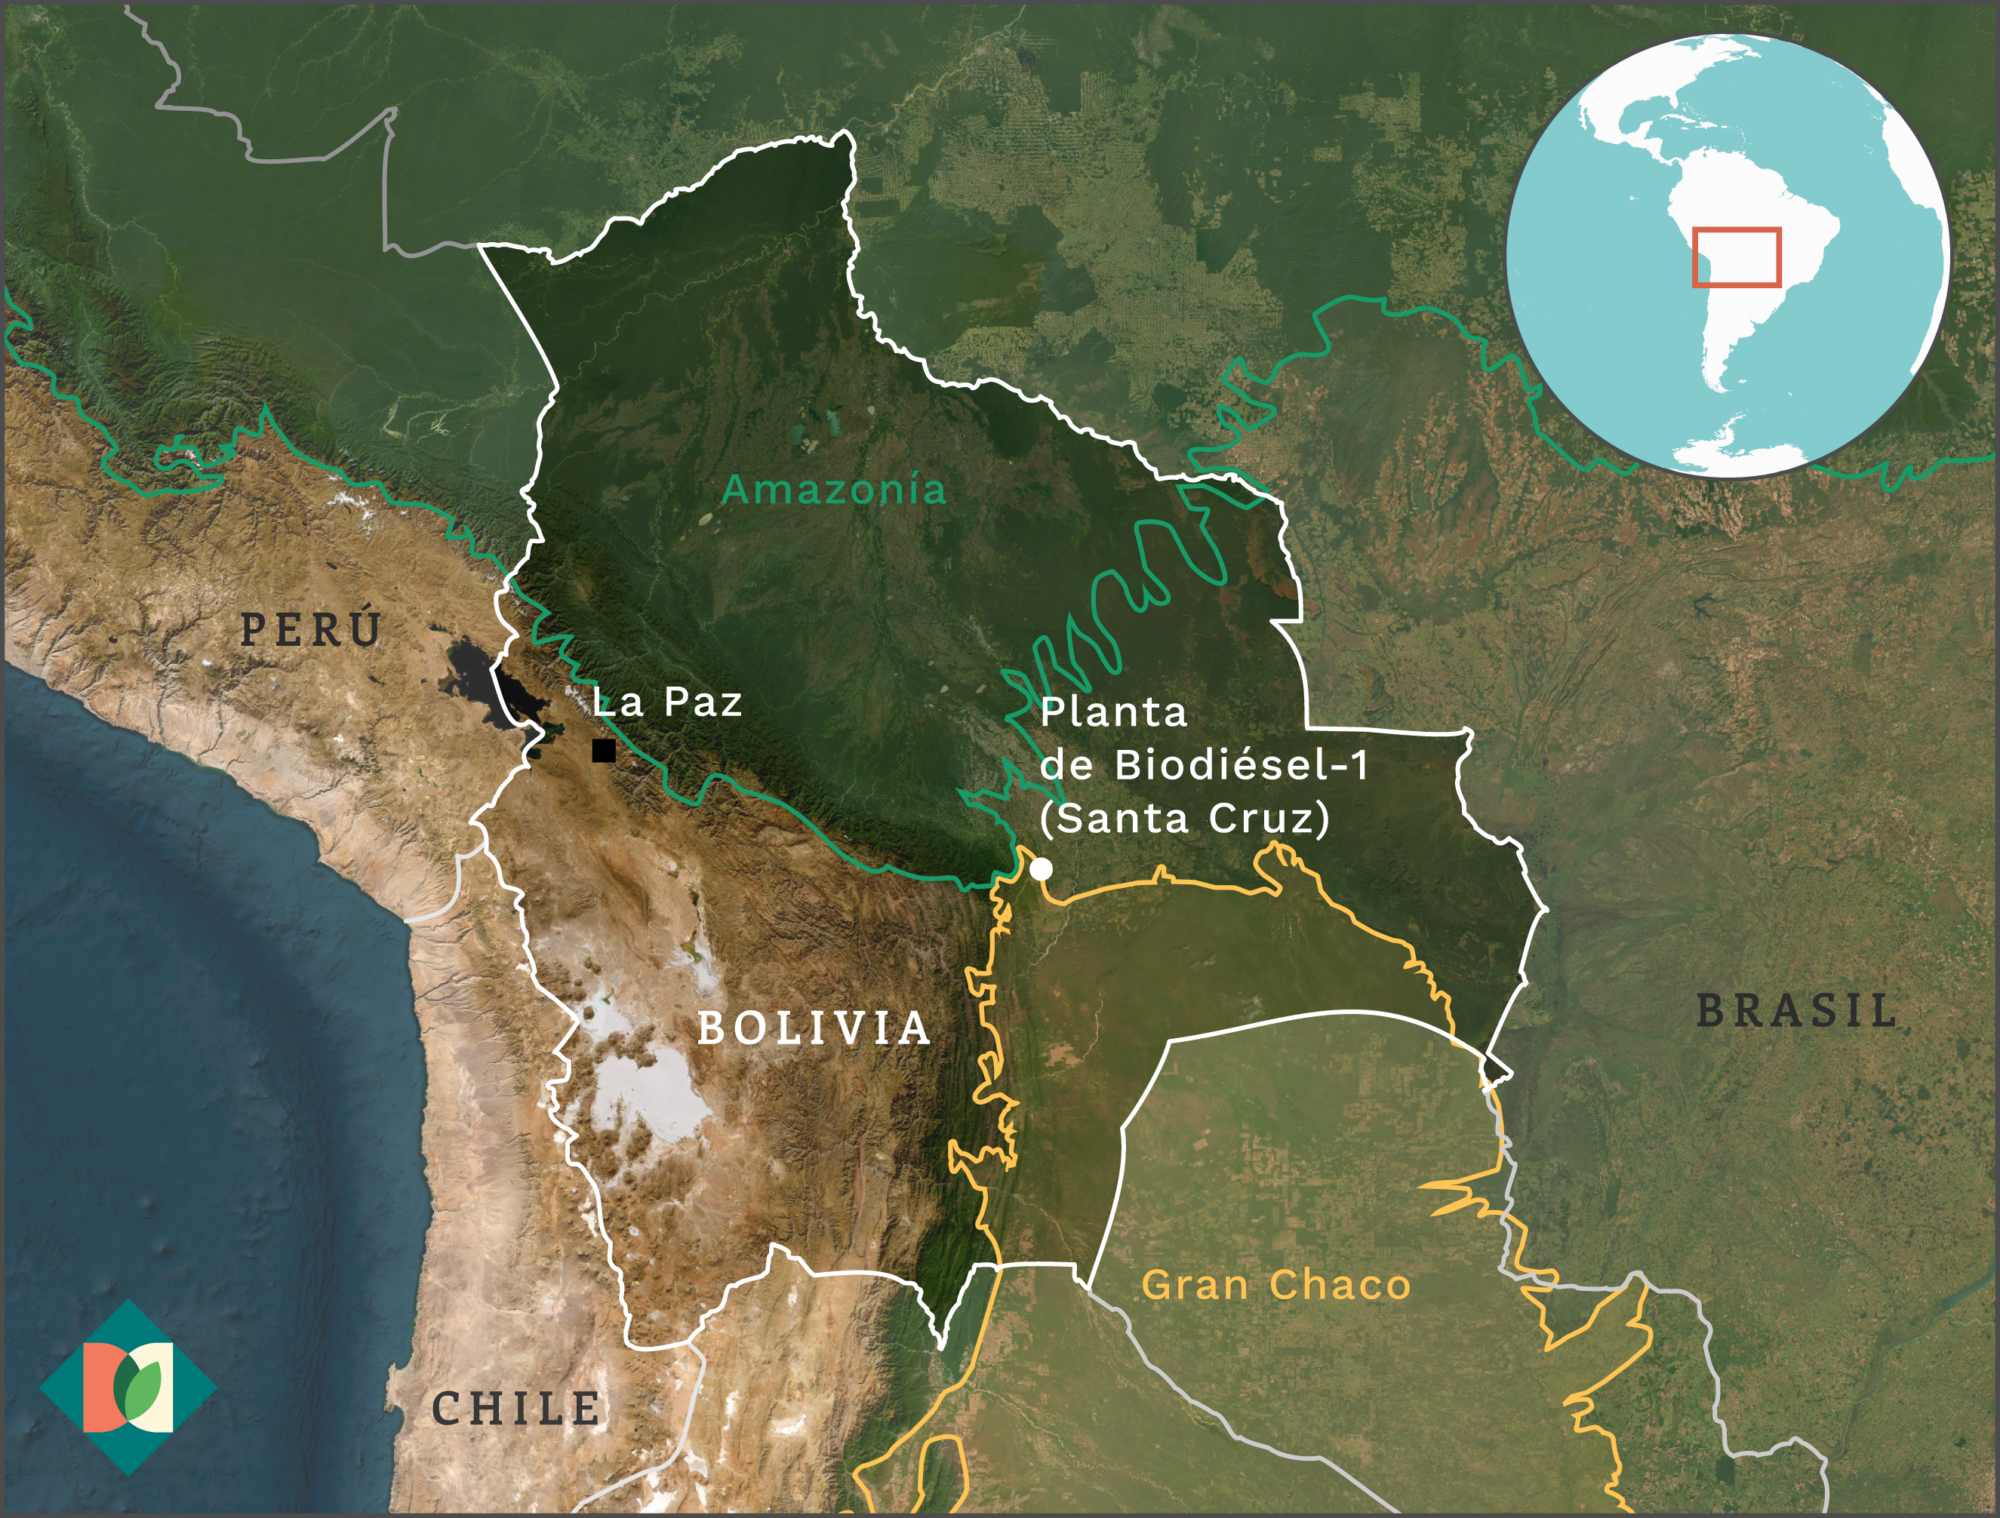 Mapa que muestra la ubicación de la futura planta de biodiésel en Bolivia, y la Amazonía y el Gran Chaco